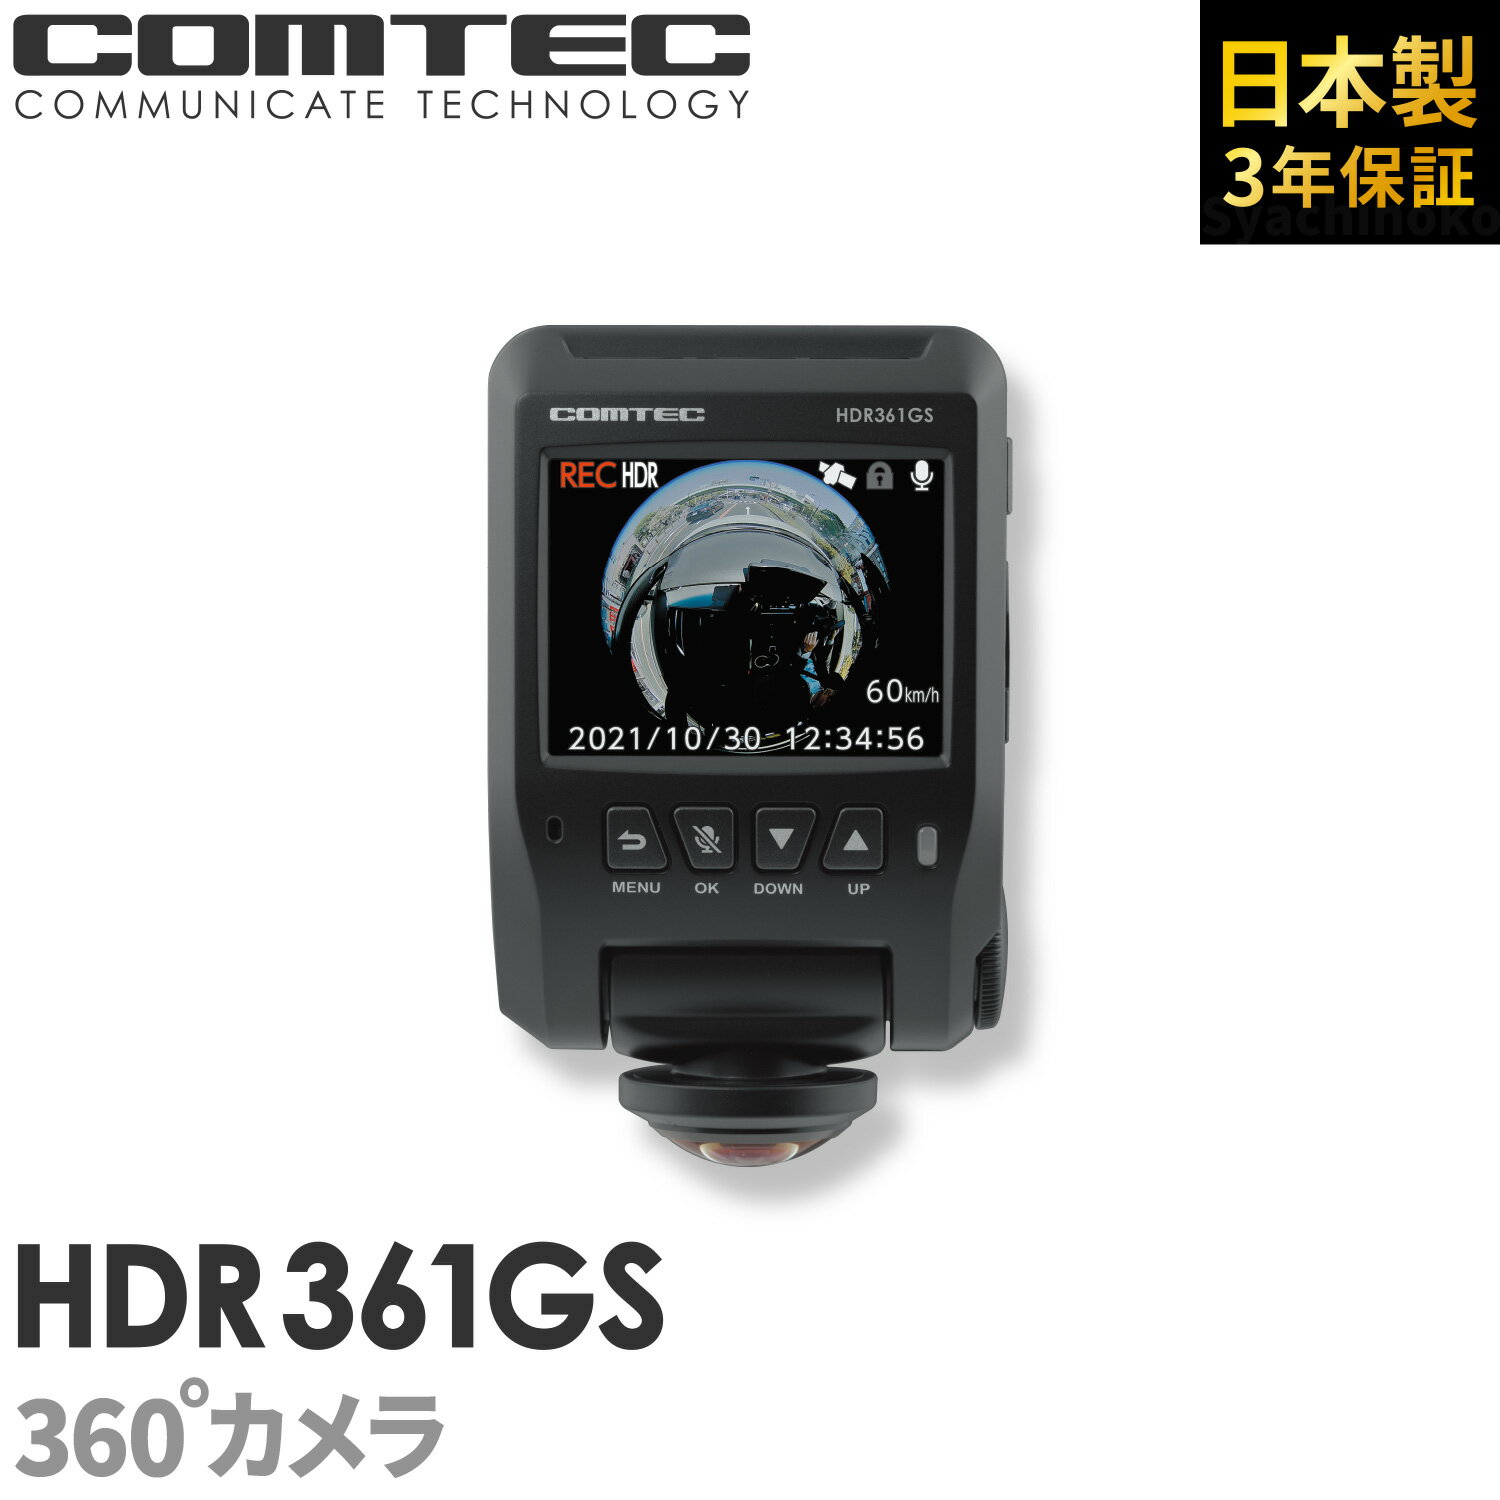 ドライブレコーダー 日本製 3年保証 <strong>360度カメラ</strong> コムテック HDR361GS 前後左右 全方位記録 ノイズ対策済 常時 衝撃録画 GPS搭載 <strong>駐車監視</strong>対応 2.4インチ液晶 <strong>ドラレコ</strong>